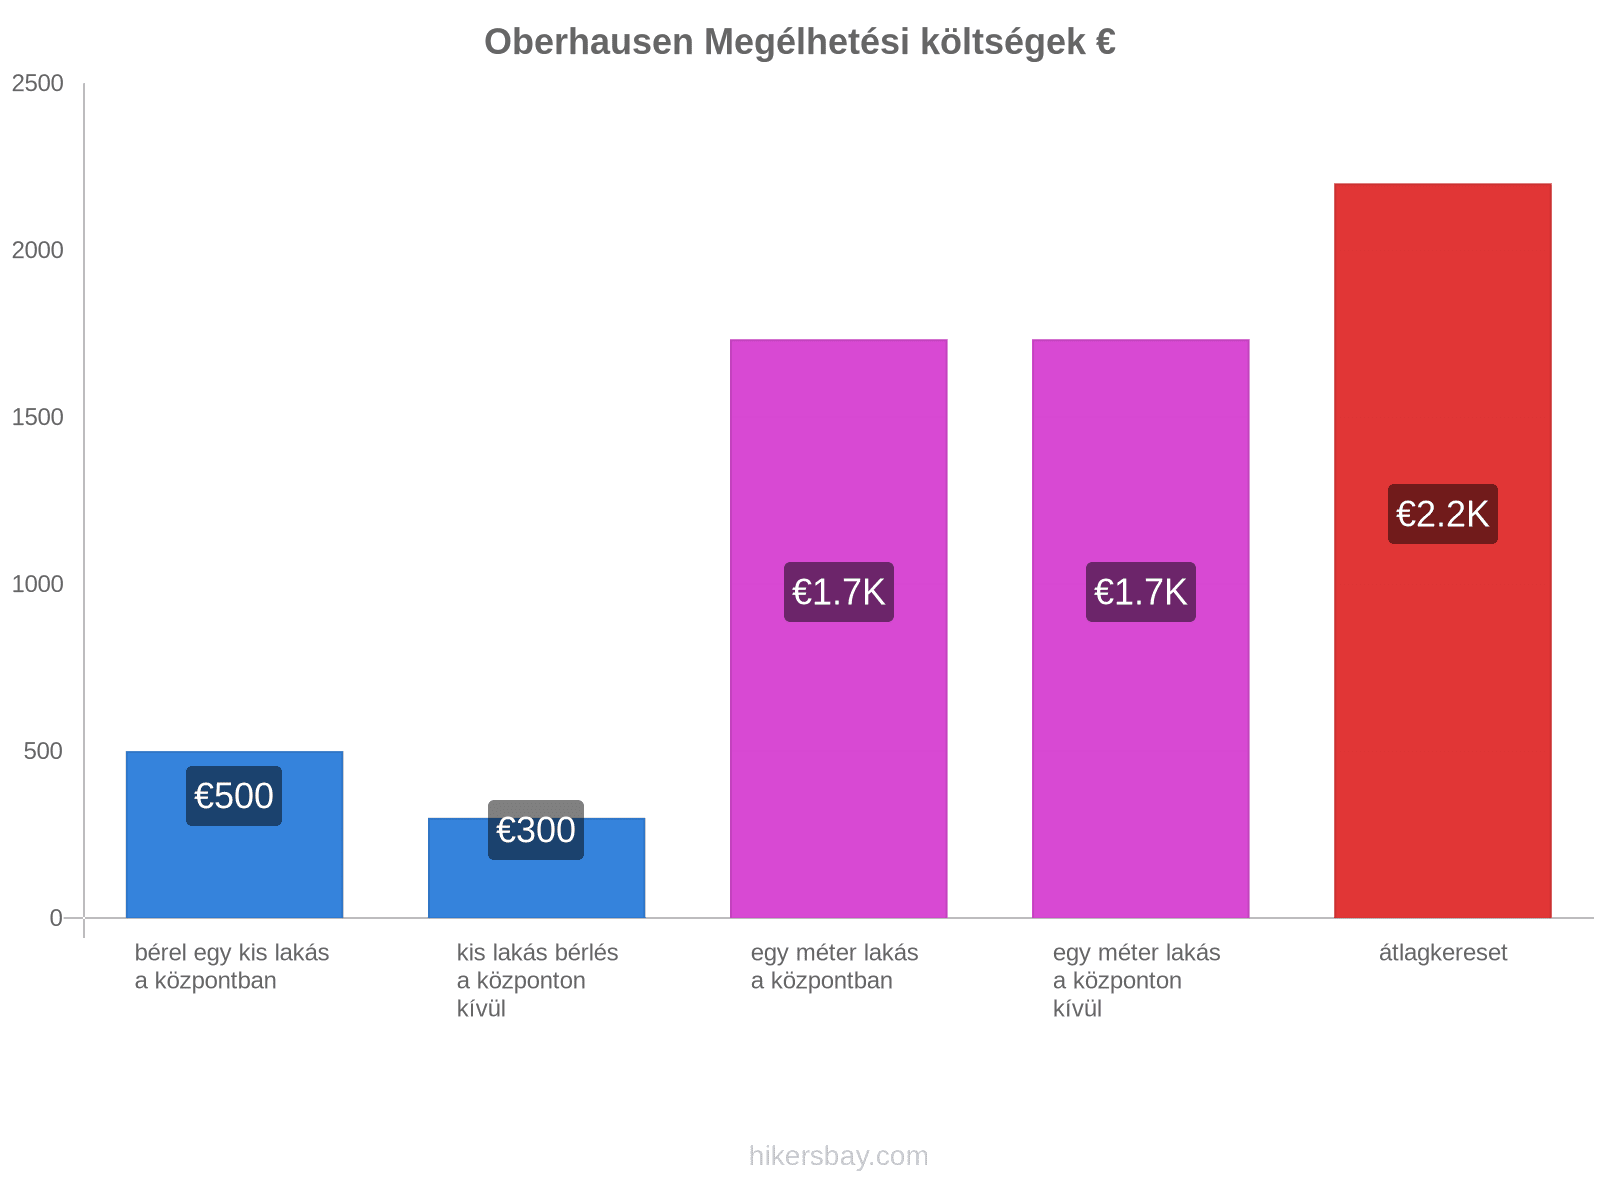 Oberhausen megélhetési költségek hikersbay.com